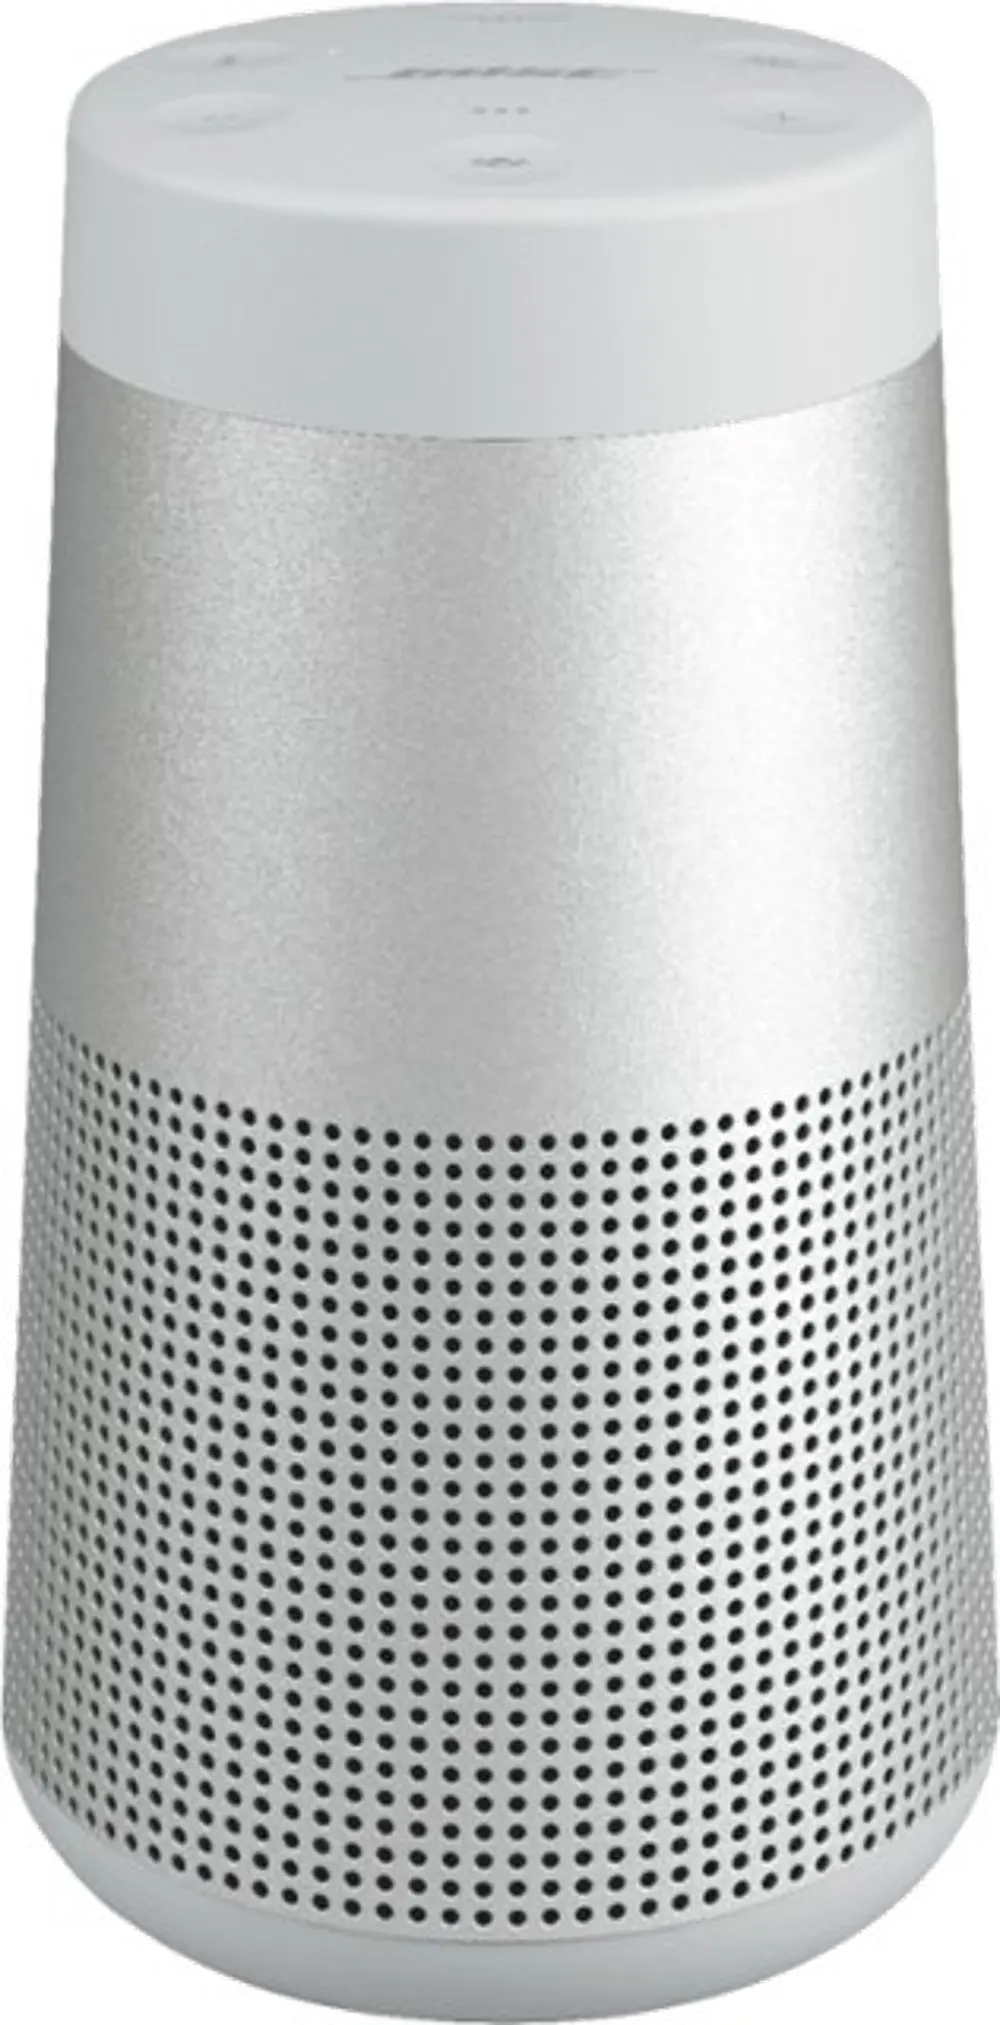 SOUNDLINK REVOLVE II/GRAY Bose SoundLink Revolve II Bluetooth Speaker-1